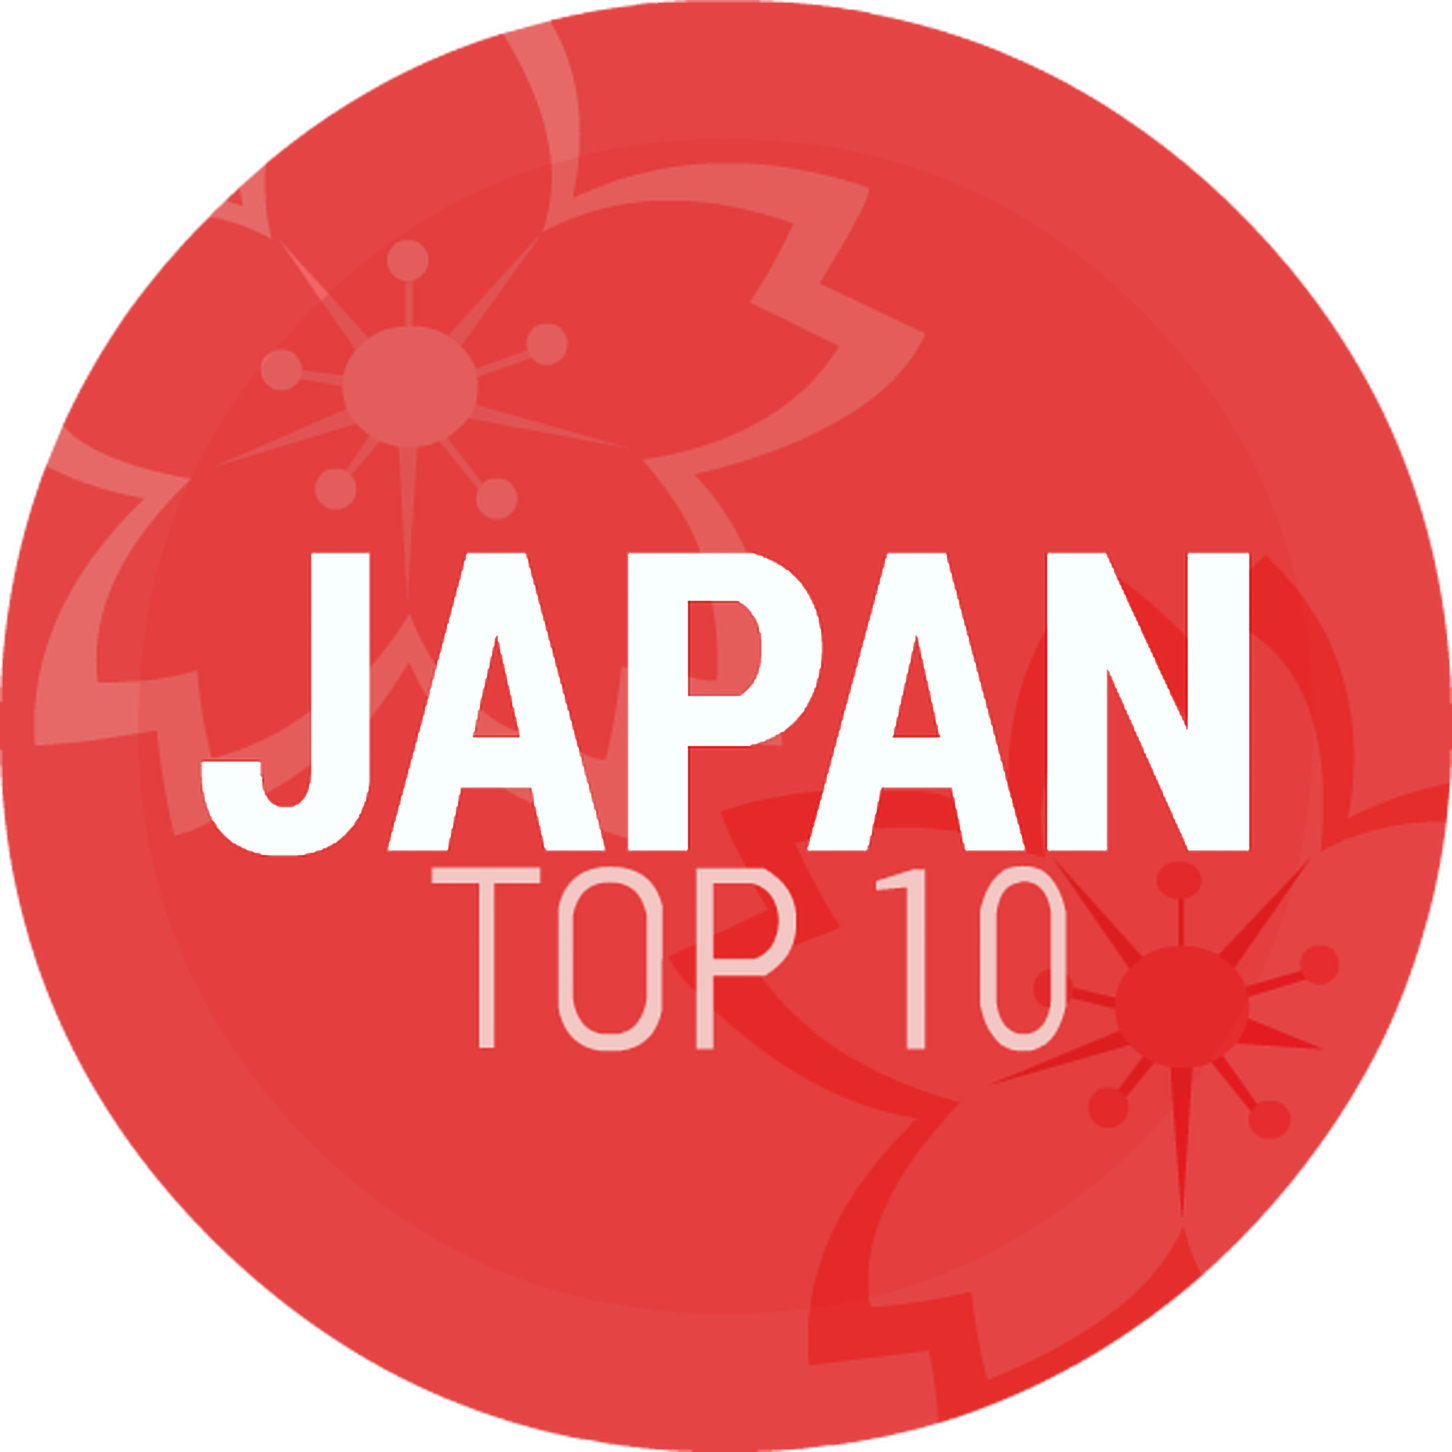 Episode 67: Japan Top 10 WS7: Top 50 Most Popular J-Pop 2014